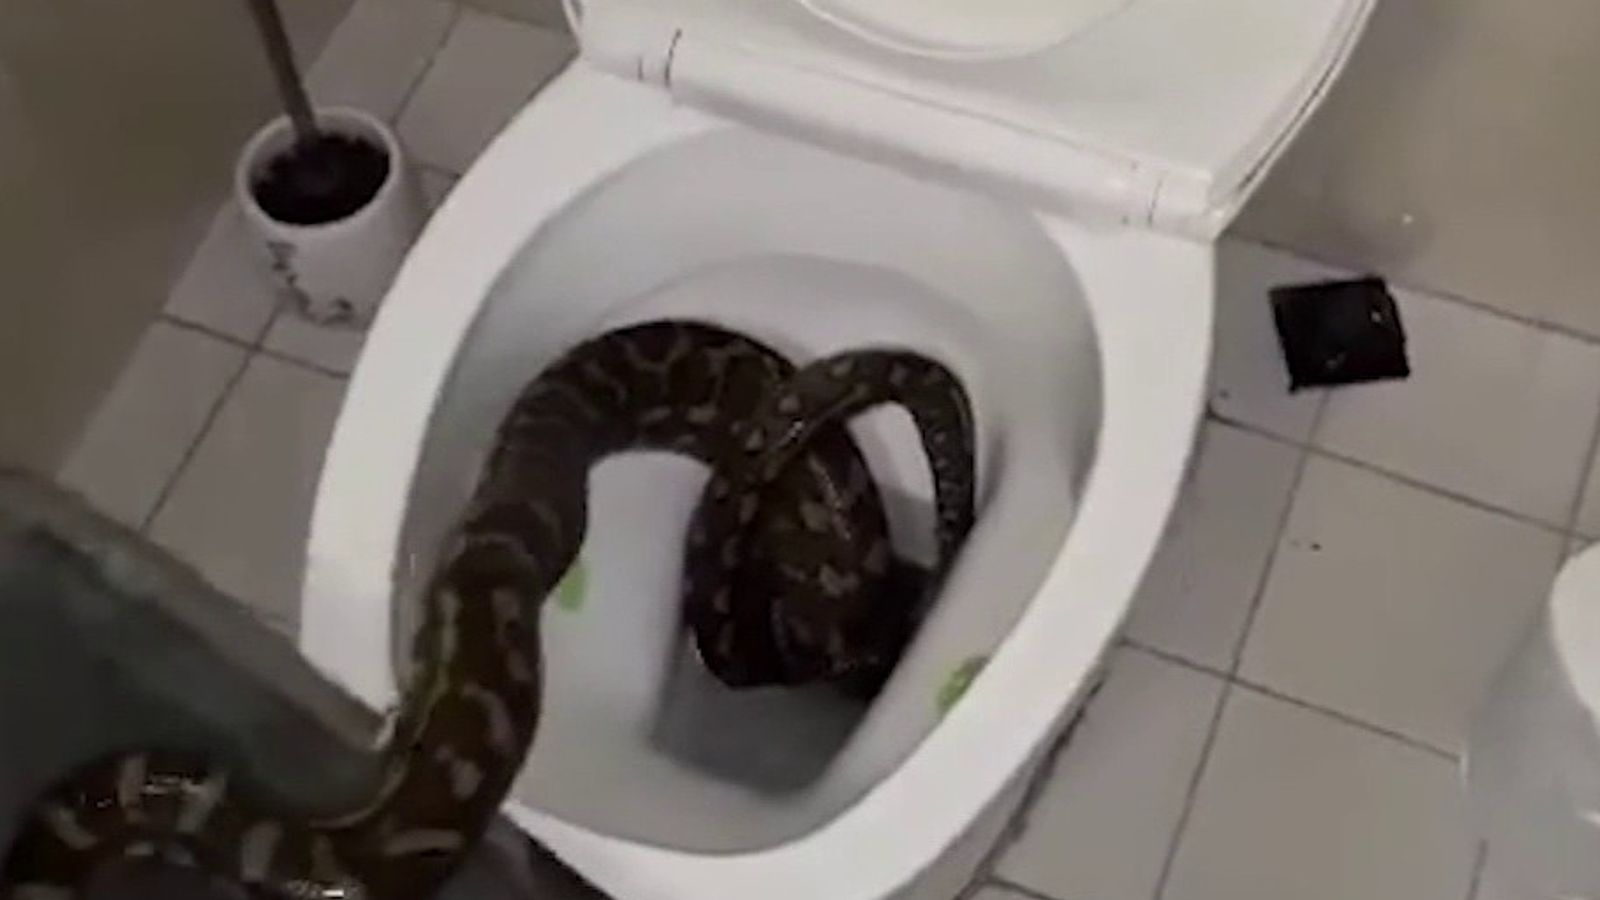 https://e3.365dm.com/20/07/1600x900/skynews-snake-python-toilet_5033622.jpg?20200708134434